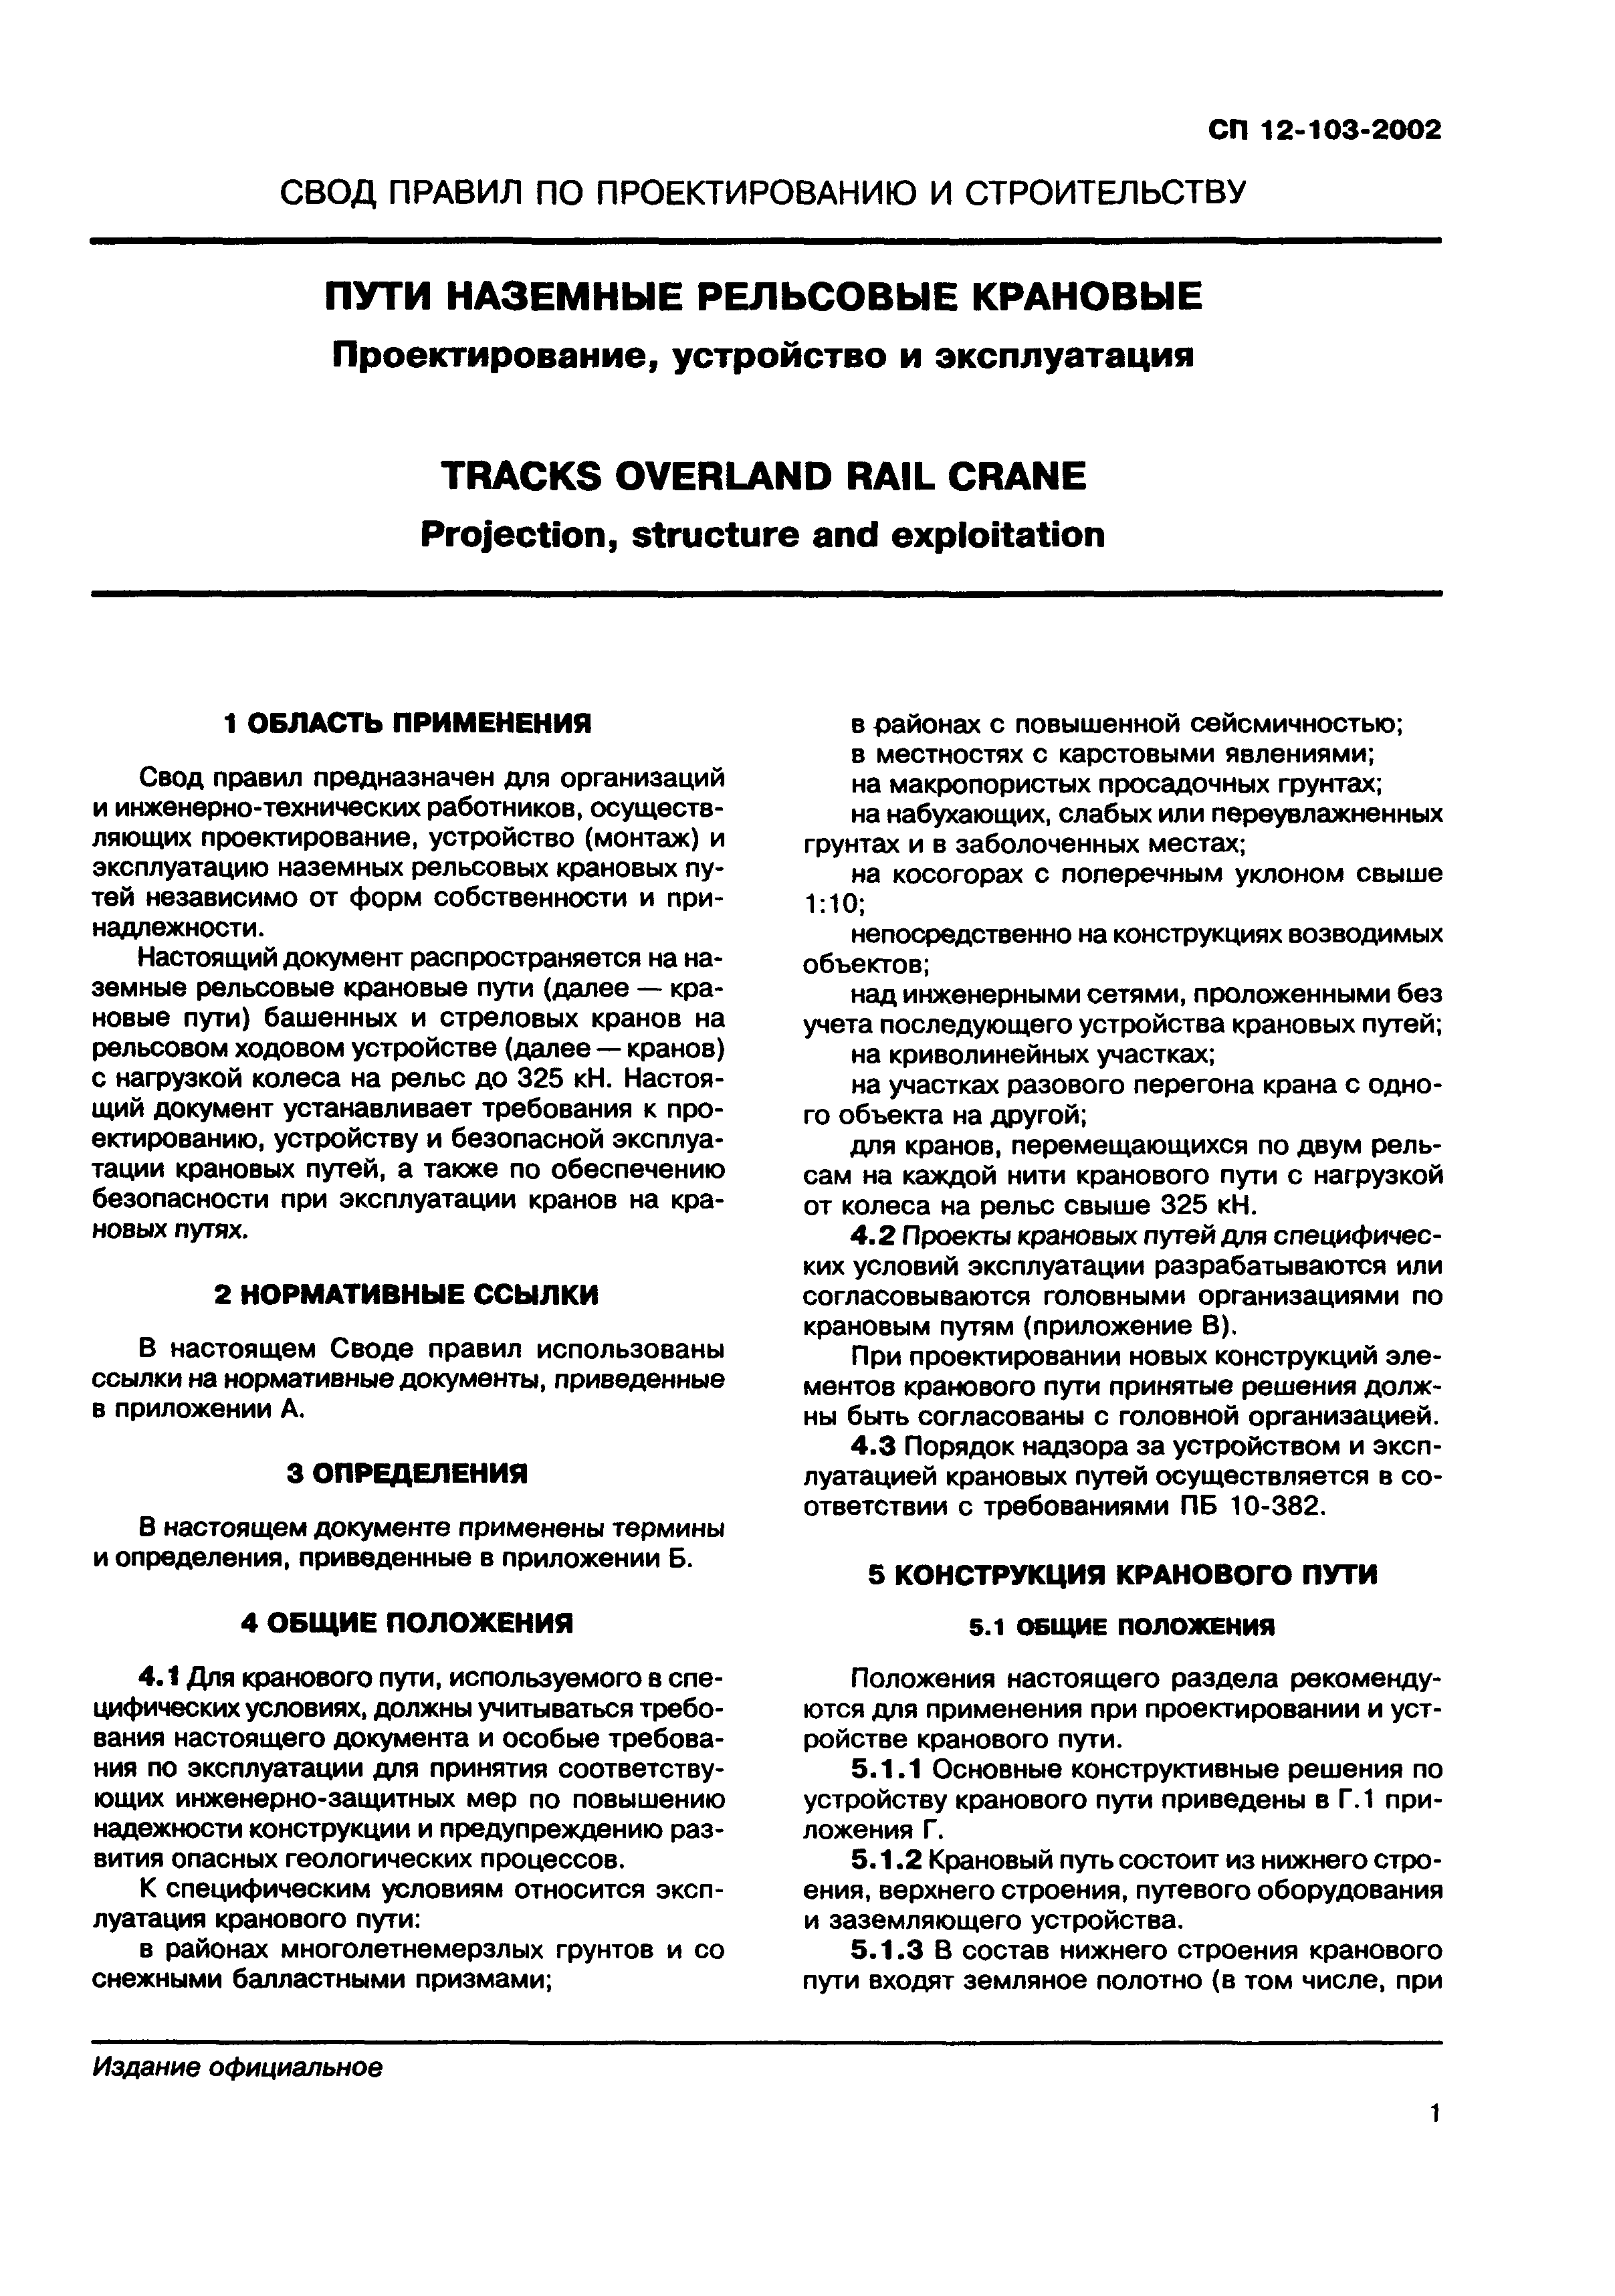 СП 12-103-2002